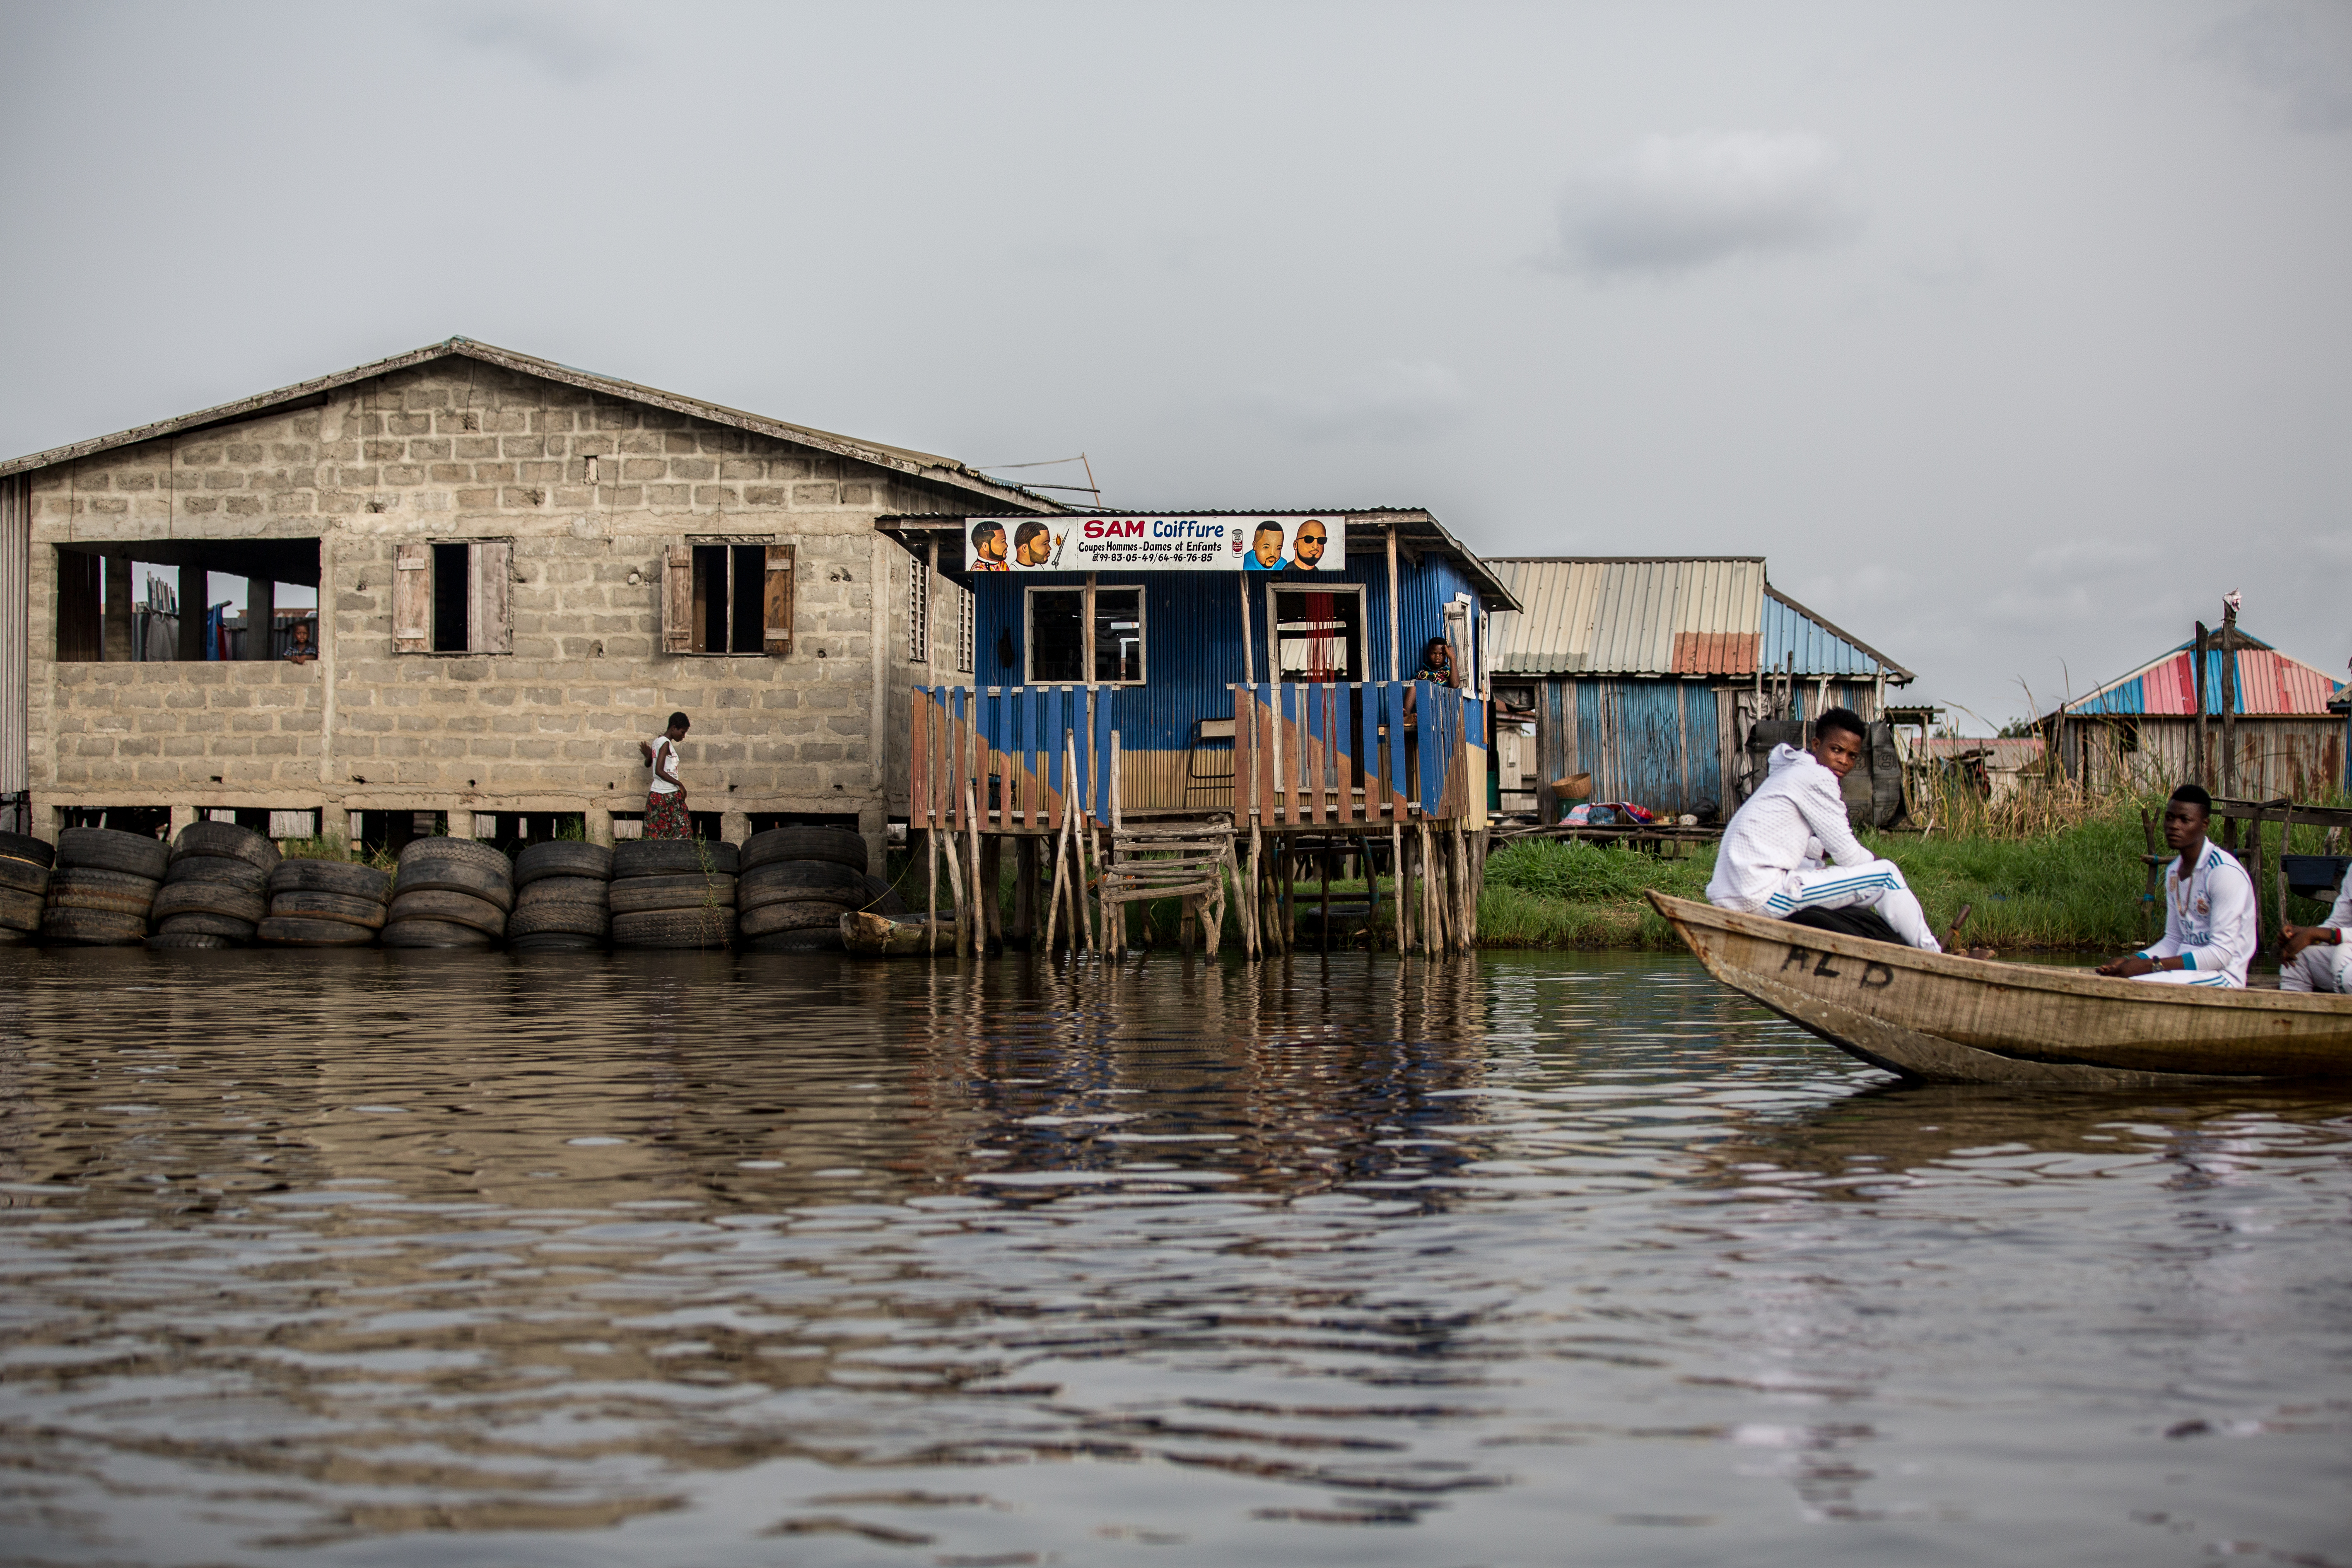 Ganvié.
A man on his canoe on Lake Nokoué.
Ganvié is a lakeside city in southern Benin that is part of the municipality of Sô-Ava in the Atlantic department, located on Lake Nokoué north of the metropolis of Cotonou, it is listed since 1996 on the indicative list of UNESCO but it is not yet classified.
Ganvié is one of the six projects included in the 2016-2021 Government Action Program (GAP) to develop tourism.
The cost of the project is estimated at 20 billion CFA francs (about 30.5 million euros).It includes sanitation and cleaning of the lake (from mid-2018 to the end of 2019. Ganvié 1, Benin - March 28, 2018.
Vie sur l’eau à Ganvié. 
Un homme sur sa pirogue sur le lac Nokoué.
Ganvié est une cité lacustre du sud du Bénin qui fait partie de la commune de Sô-Ava dans le département de l'Atlantique, situé sur le lac Nokoué au nord de la métropole de Cotonou, elle est inscrite depuis 1996 sur la liste indicative de l'UNESCO mais elle n’est pas encore classée.
Ganvié fait partie des six projets retenus dans le Programme d’actions du gouvernement (PAG) 2016-2021 pour développer le tourisme.
Le coût du projet est estimé à 20 milliards de F CFA (près de 30,5 millions d’euros). Il comprend l’assainissement et le curage du lac (de la mi-2018 à la fin de 2019. Ganvié 1, Bénin- 28 mars 2018., 2018.